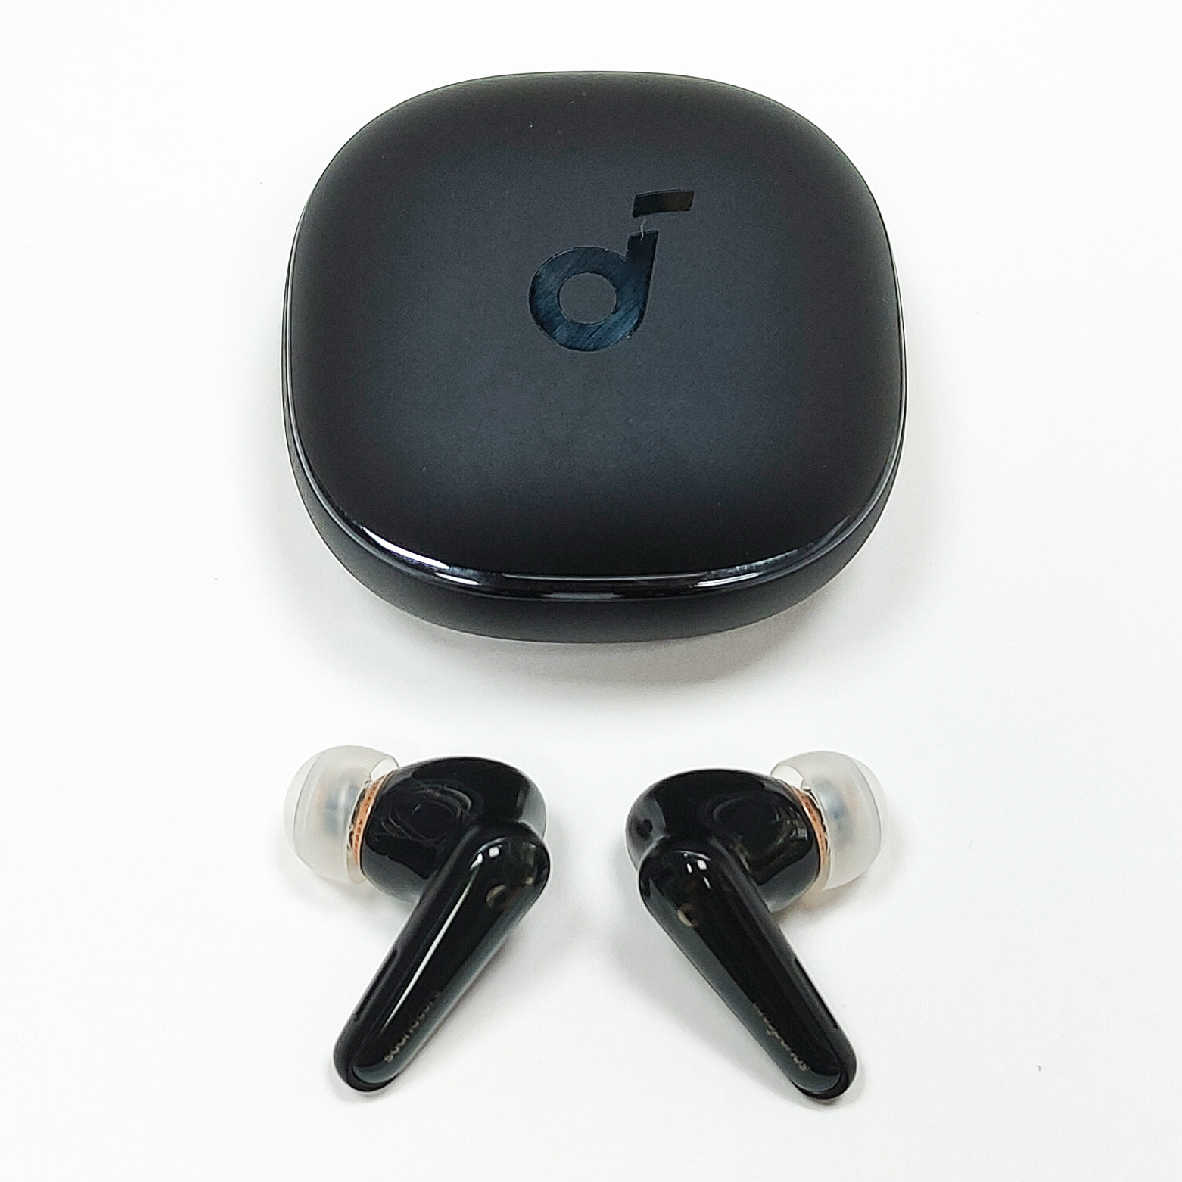 【福利機】Anker Soundcore Liberty 4 黑色 主動降噪 真無線 藍牙耳機 全新品 | 金曲音響